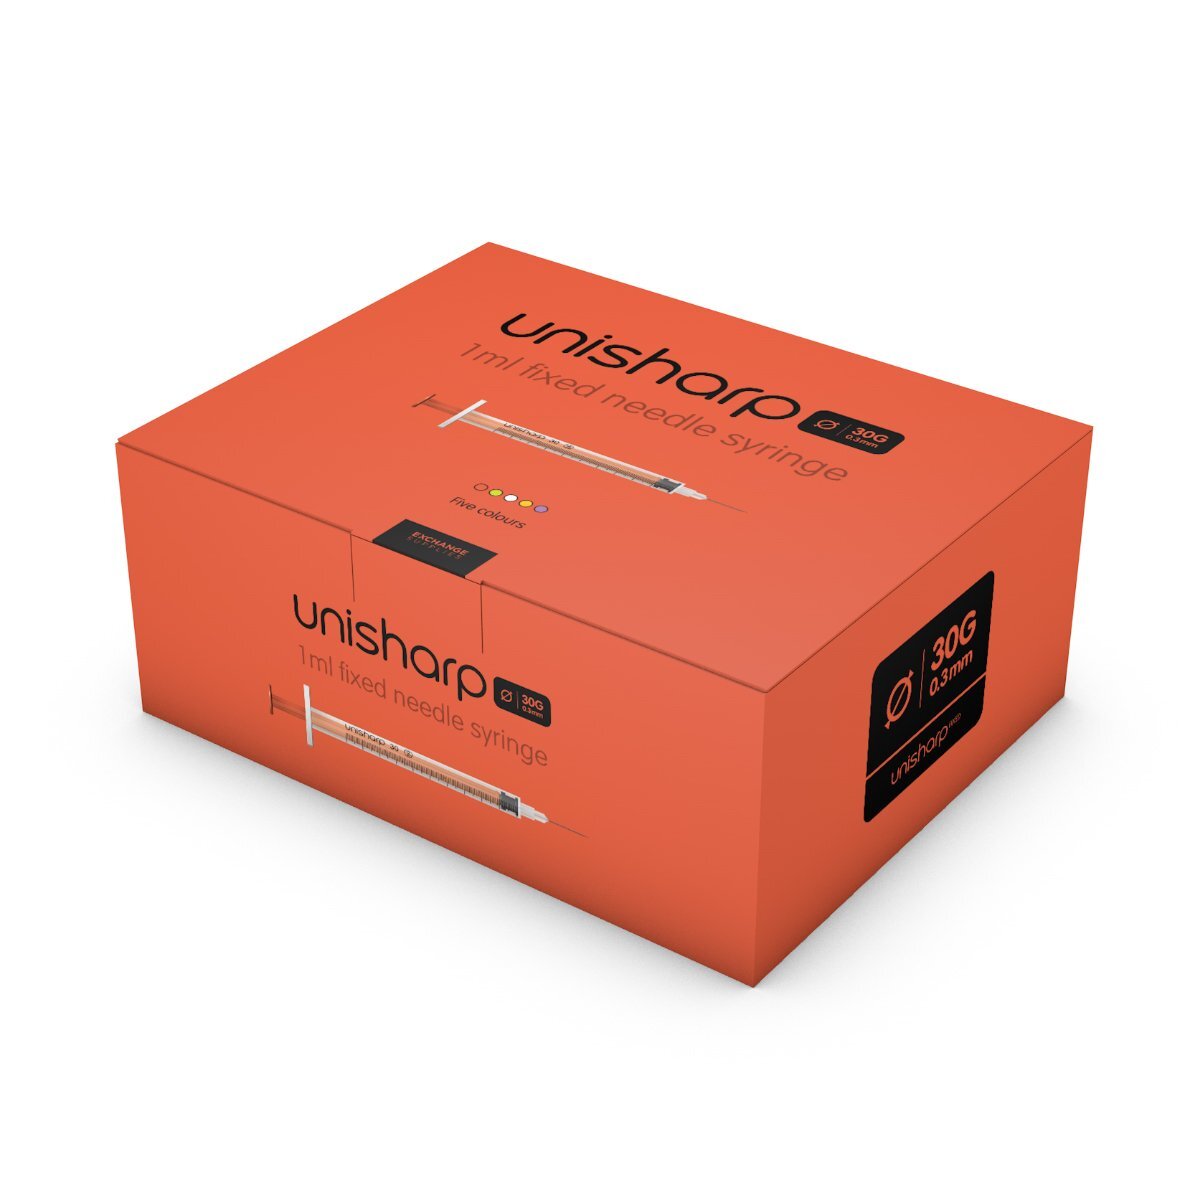 Unisharp 1ml Fixed 30G 0.5" Red x 100